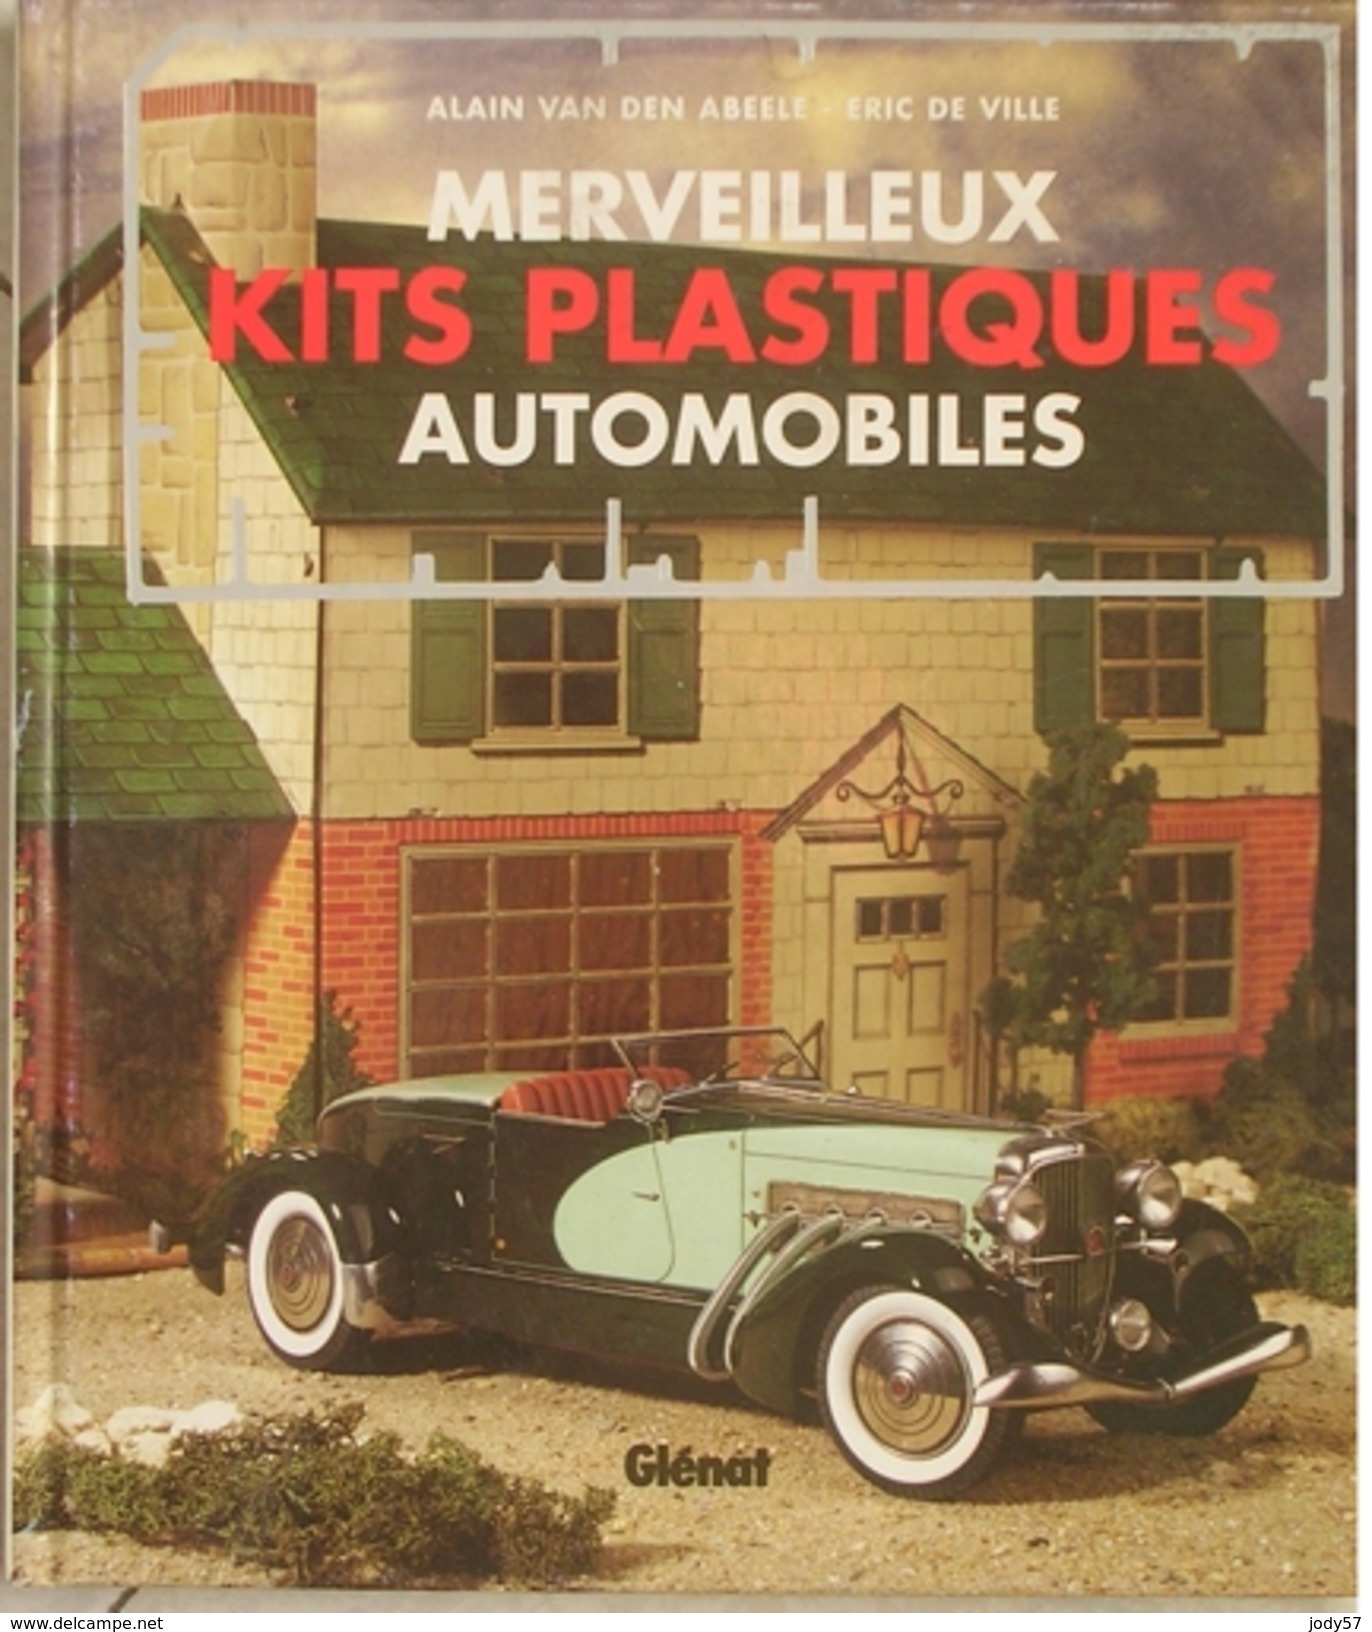 MERVEILLEUX KITS PLASTIQUES AUTOMOBILES - VAN DEN ABEELE - DE VILLE - GLENAT - 1994 - Modellbau